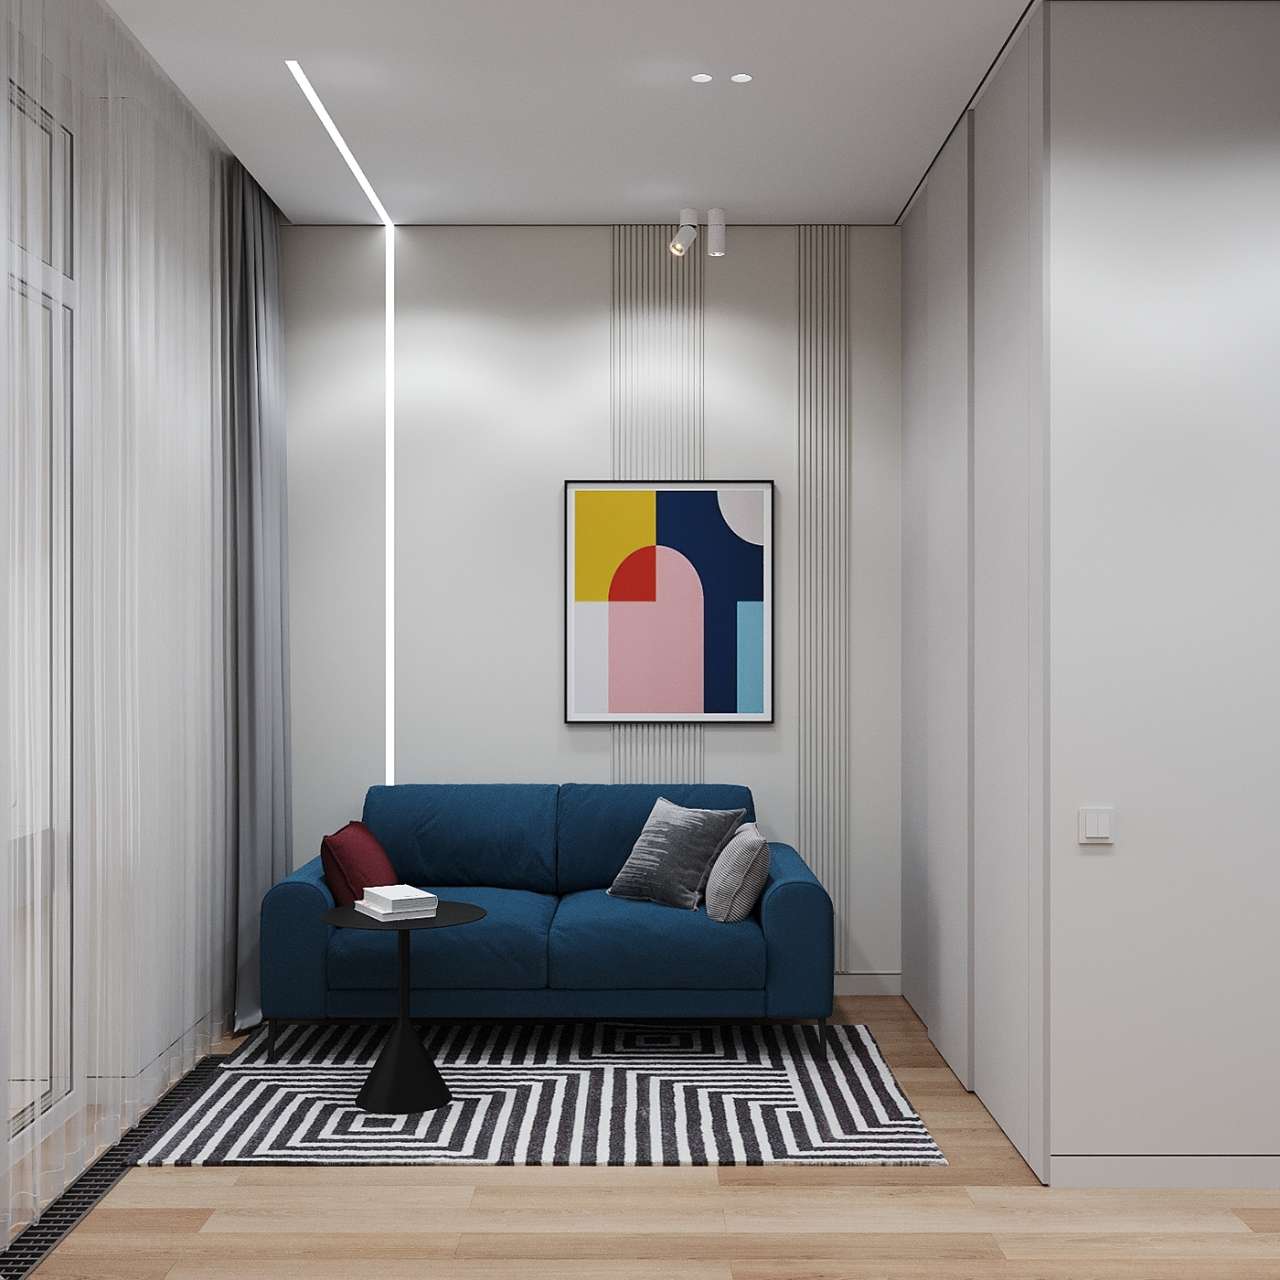 Thiết kế phòng khách nhỏ theo phong cách Bauhaus 